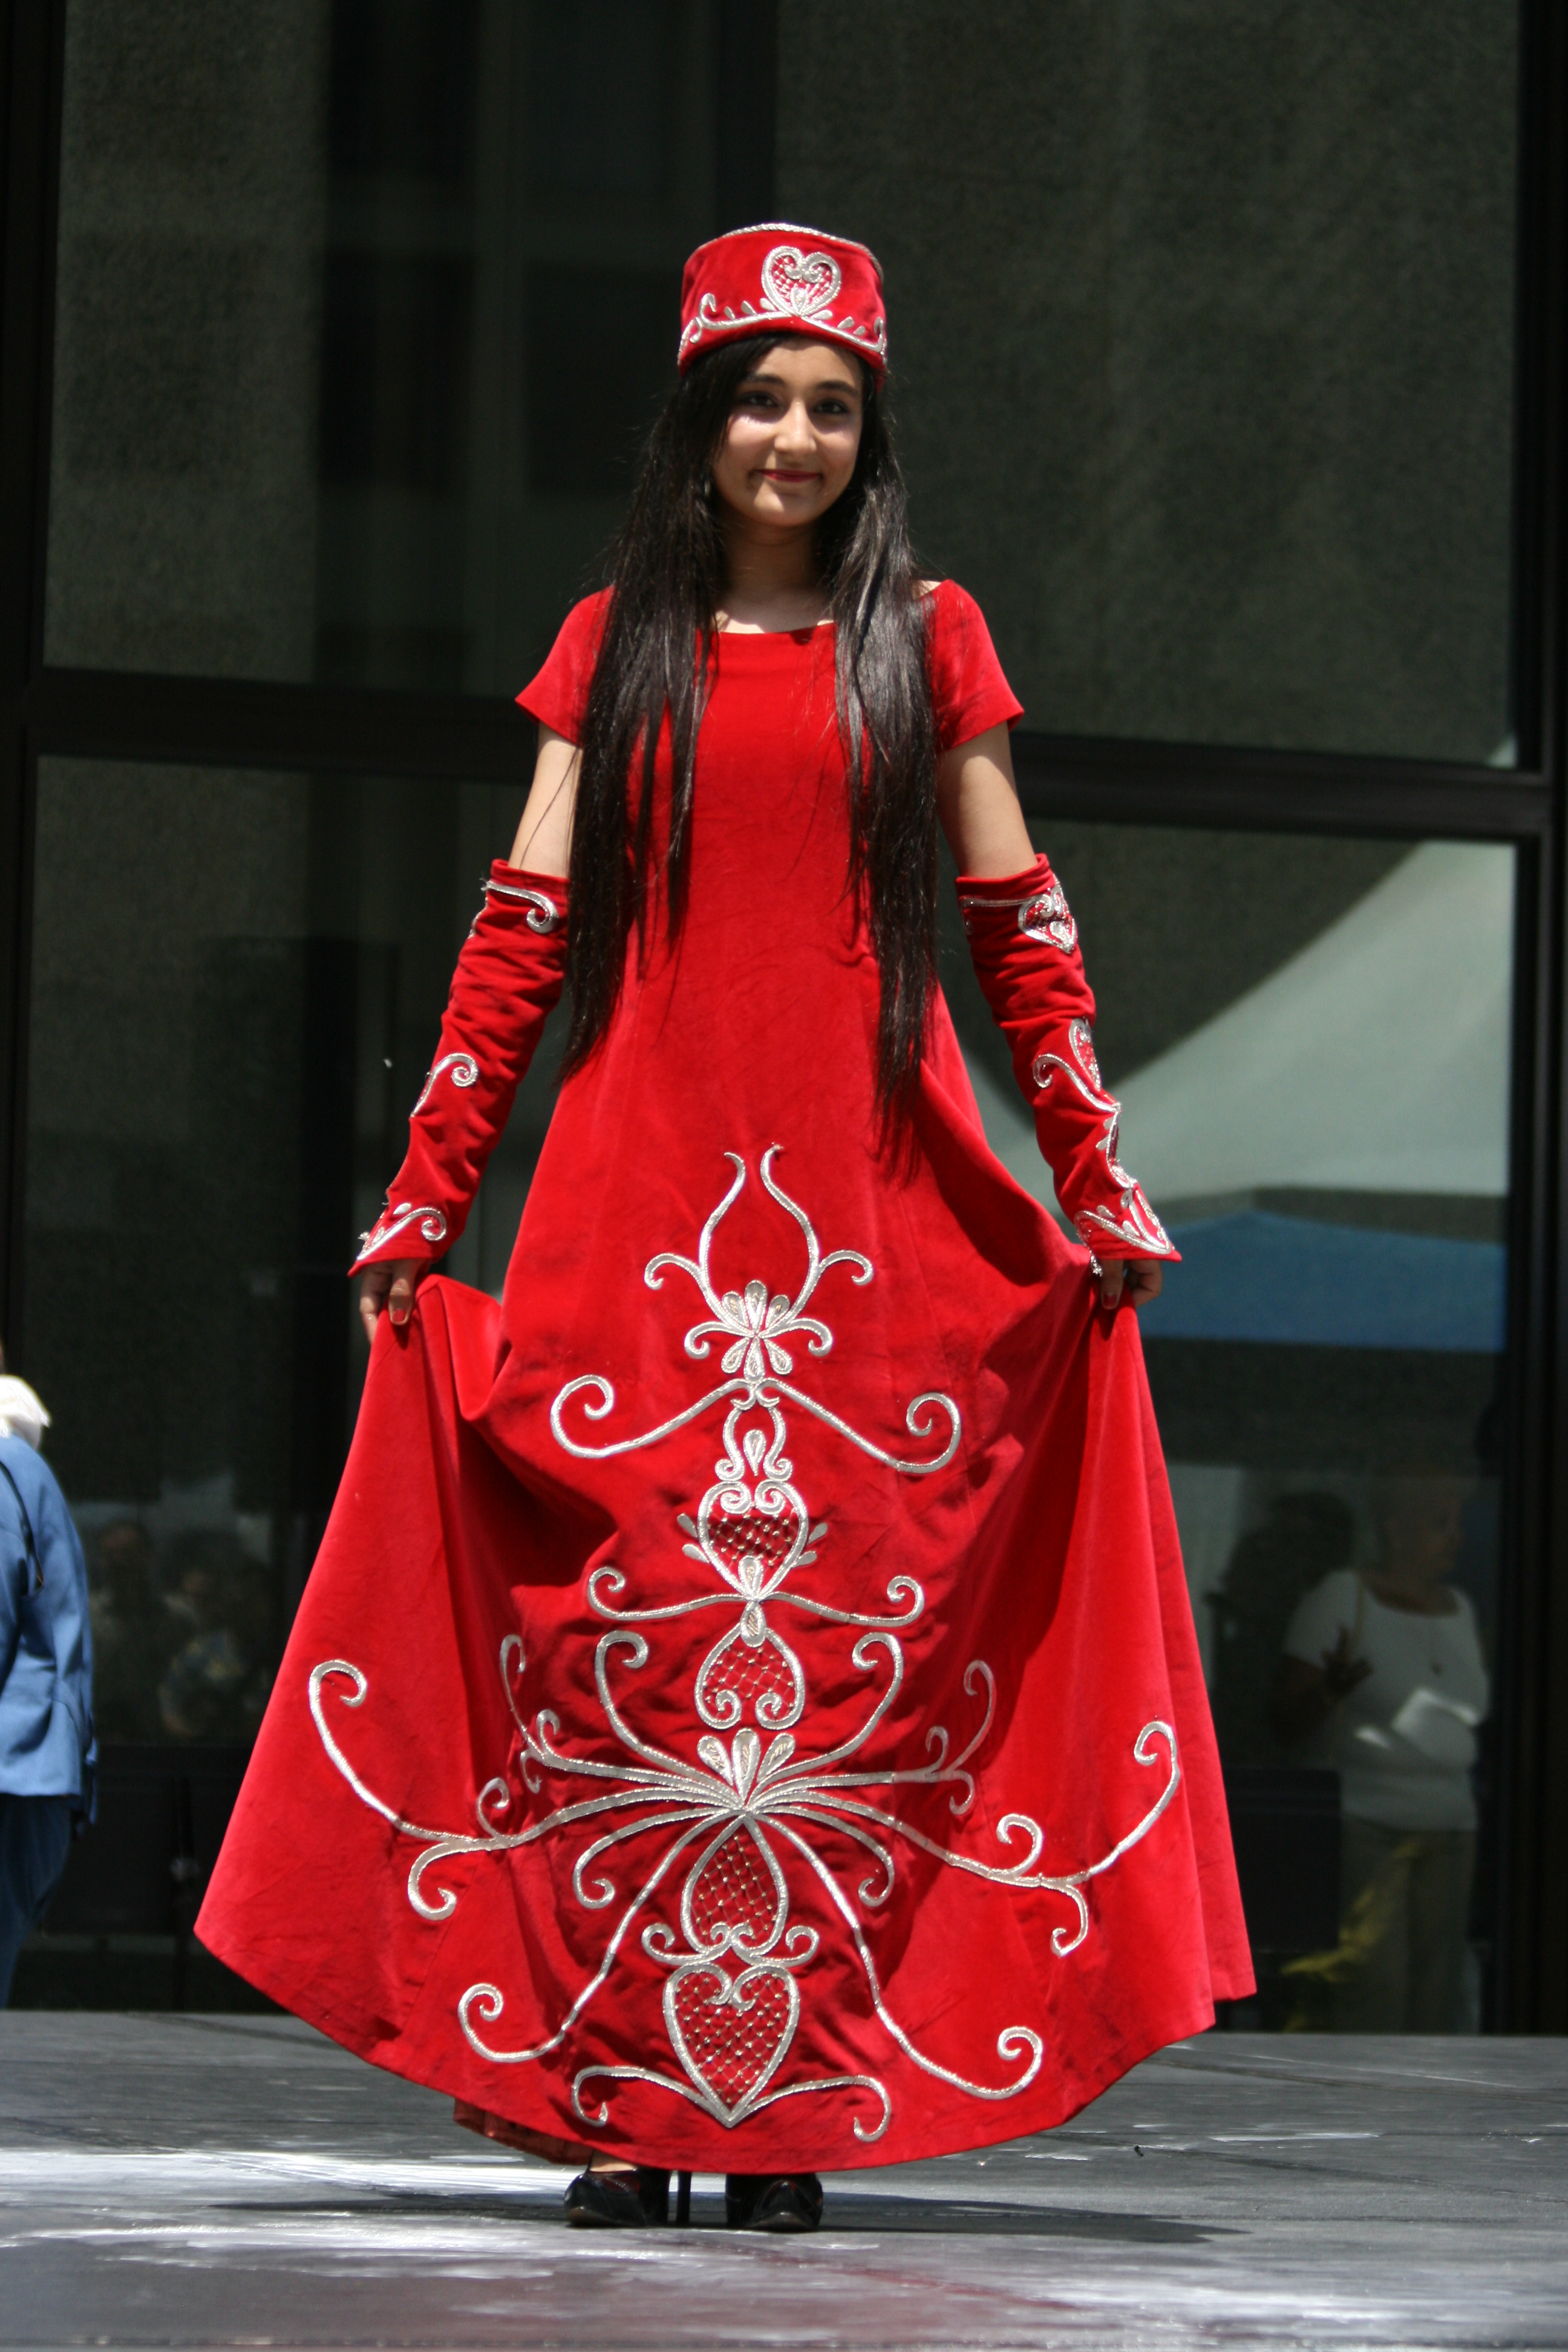 Turkish girl wearing red dress 2